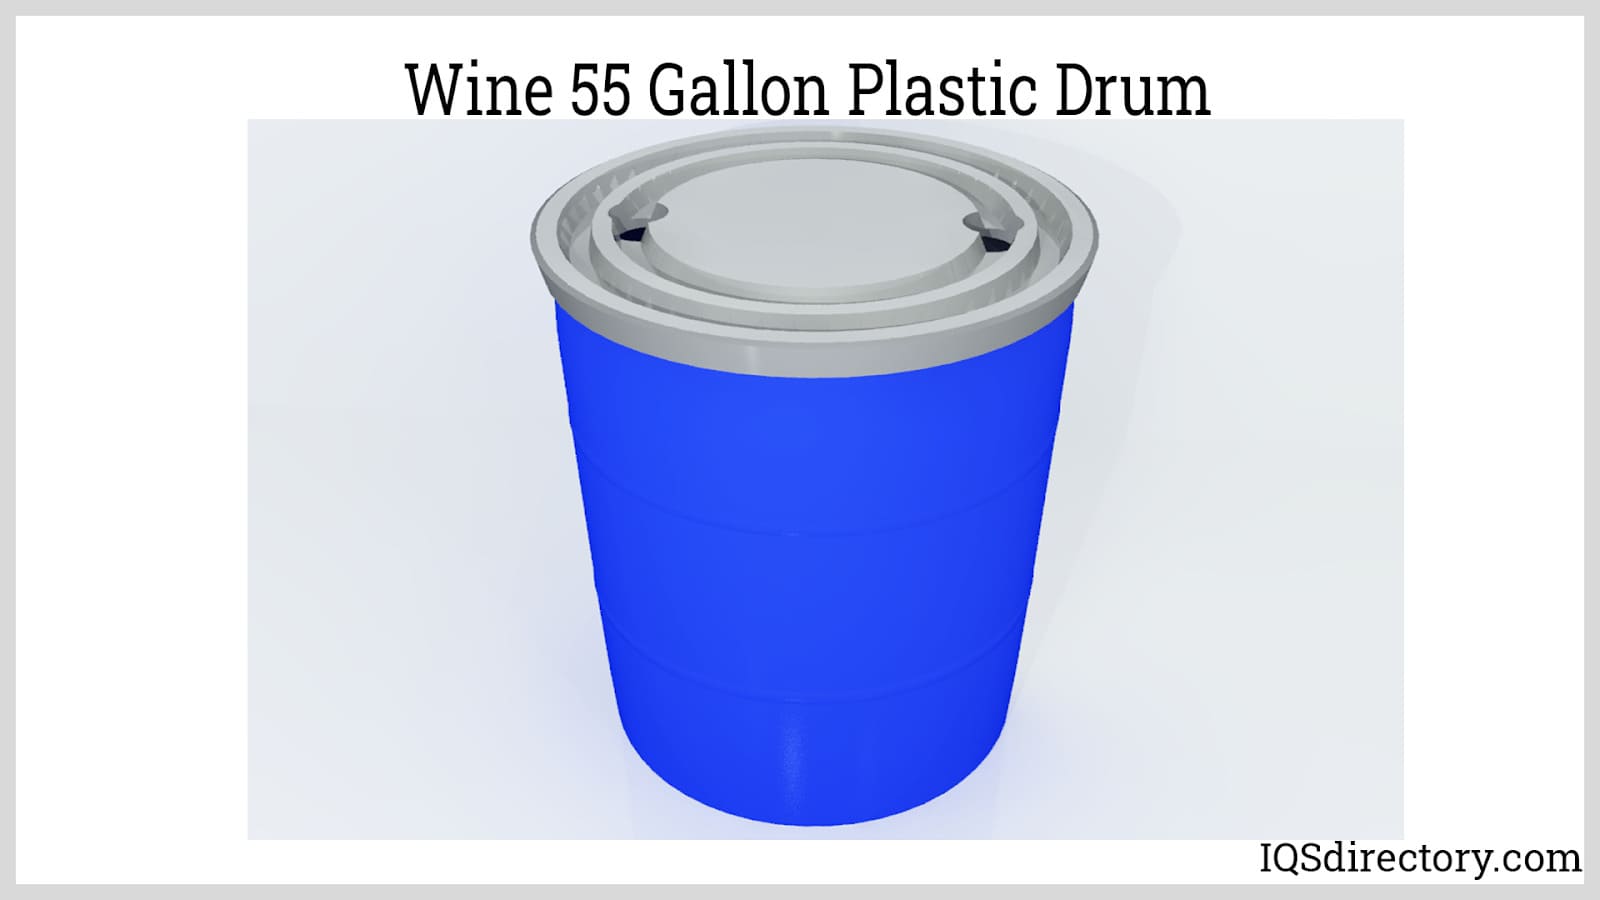 Wine 55 Gallon Plastic Drum